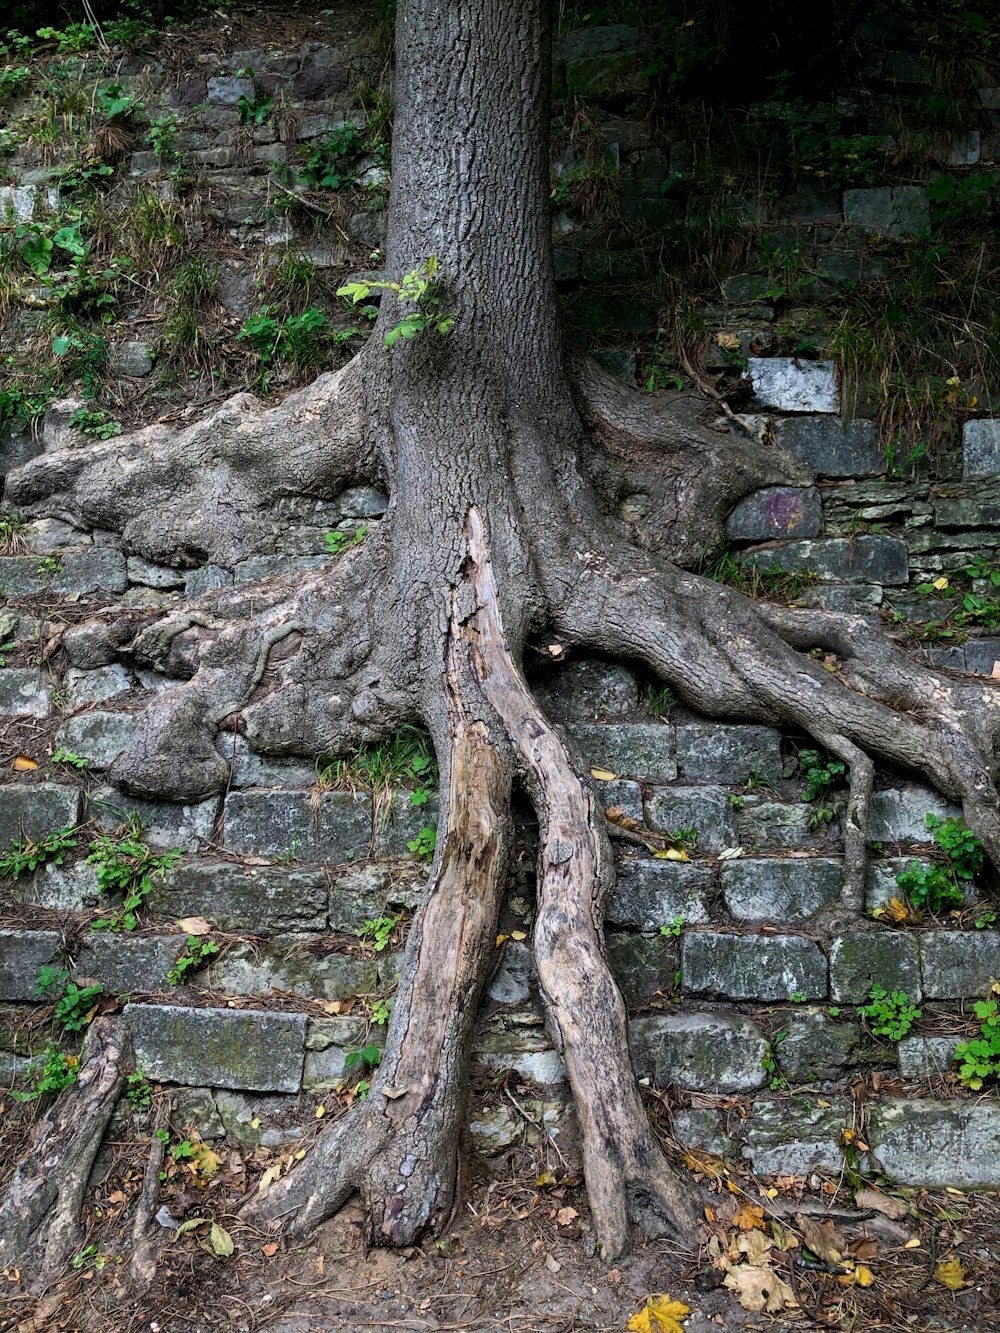 レンガの壁から成長している木